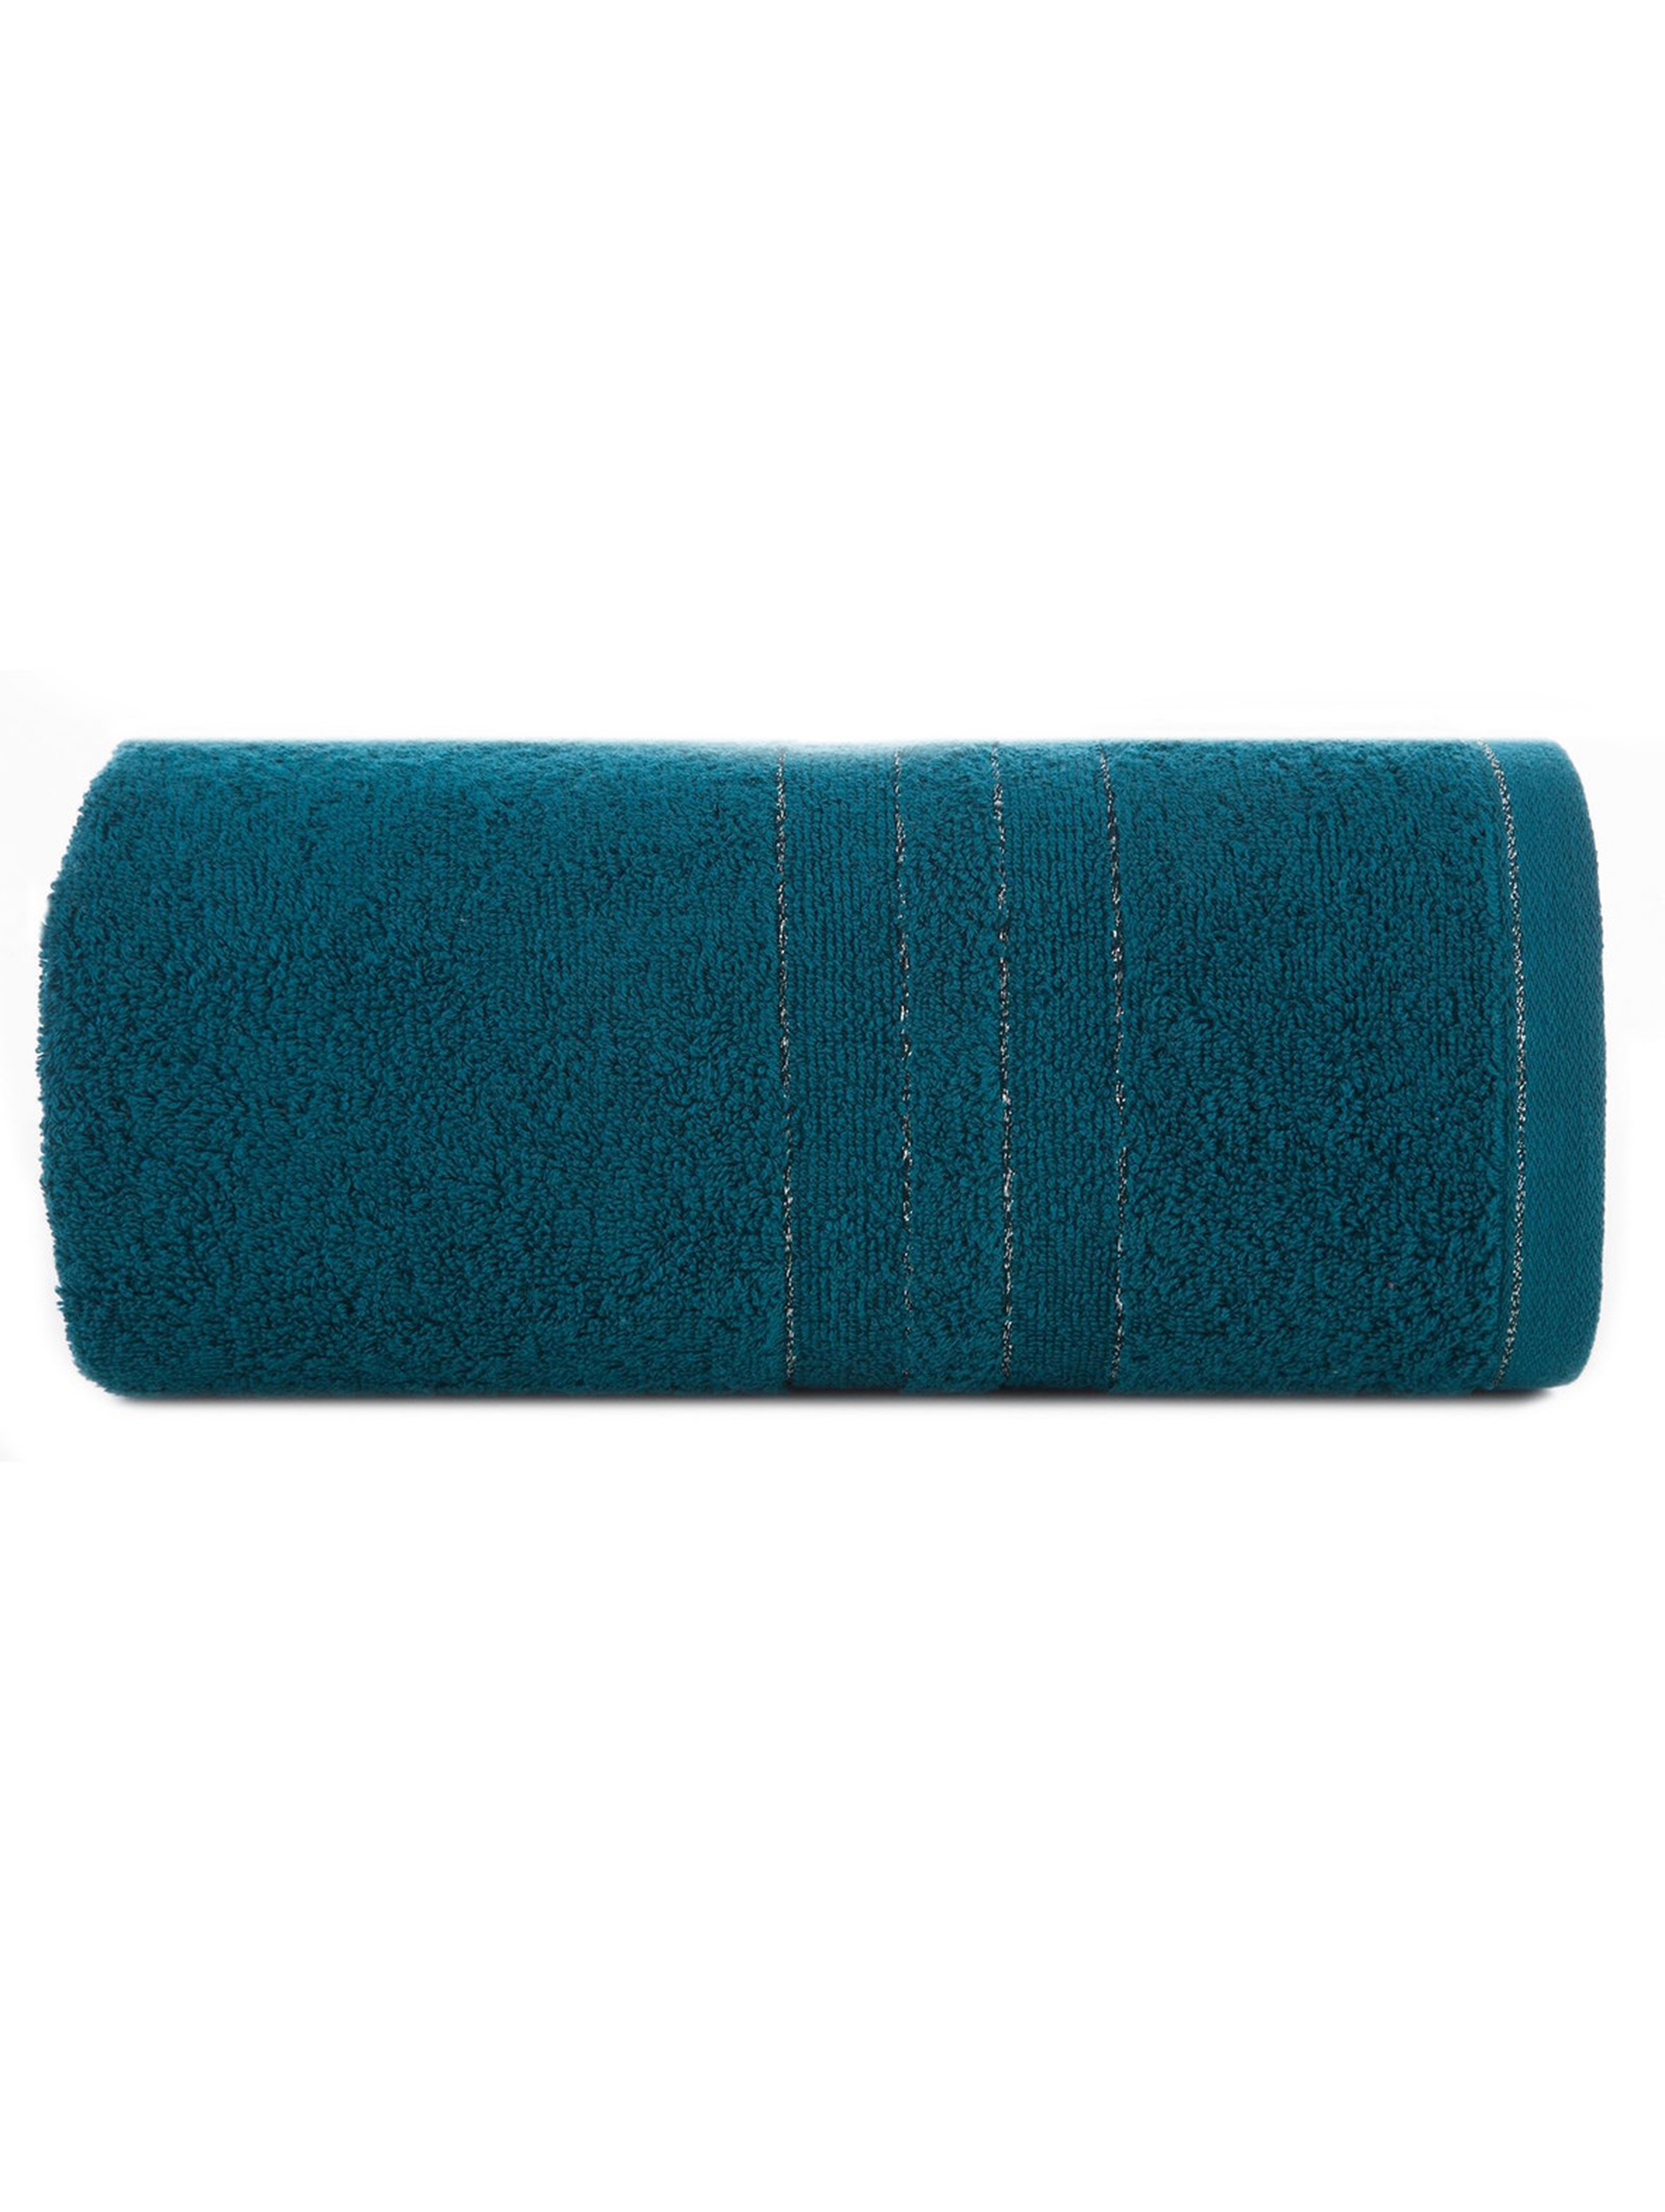 Ręcznik kąpielowy bawełniany Gala 50x90 cm turkusowy